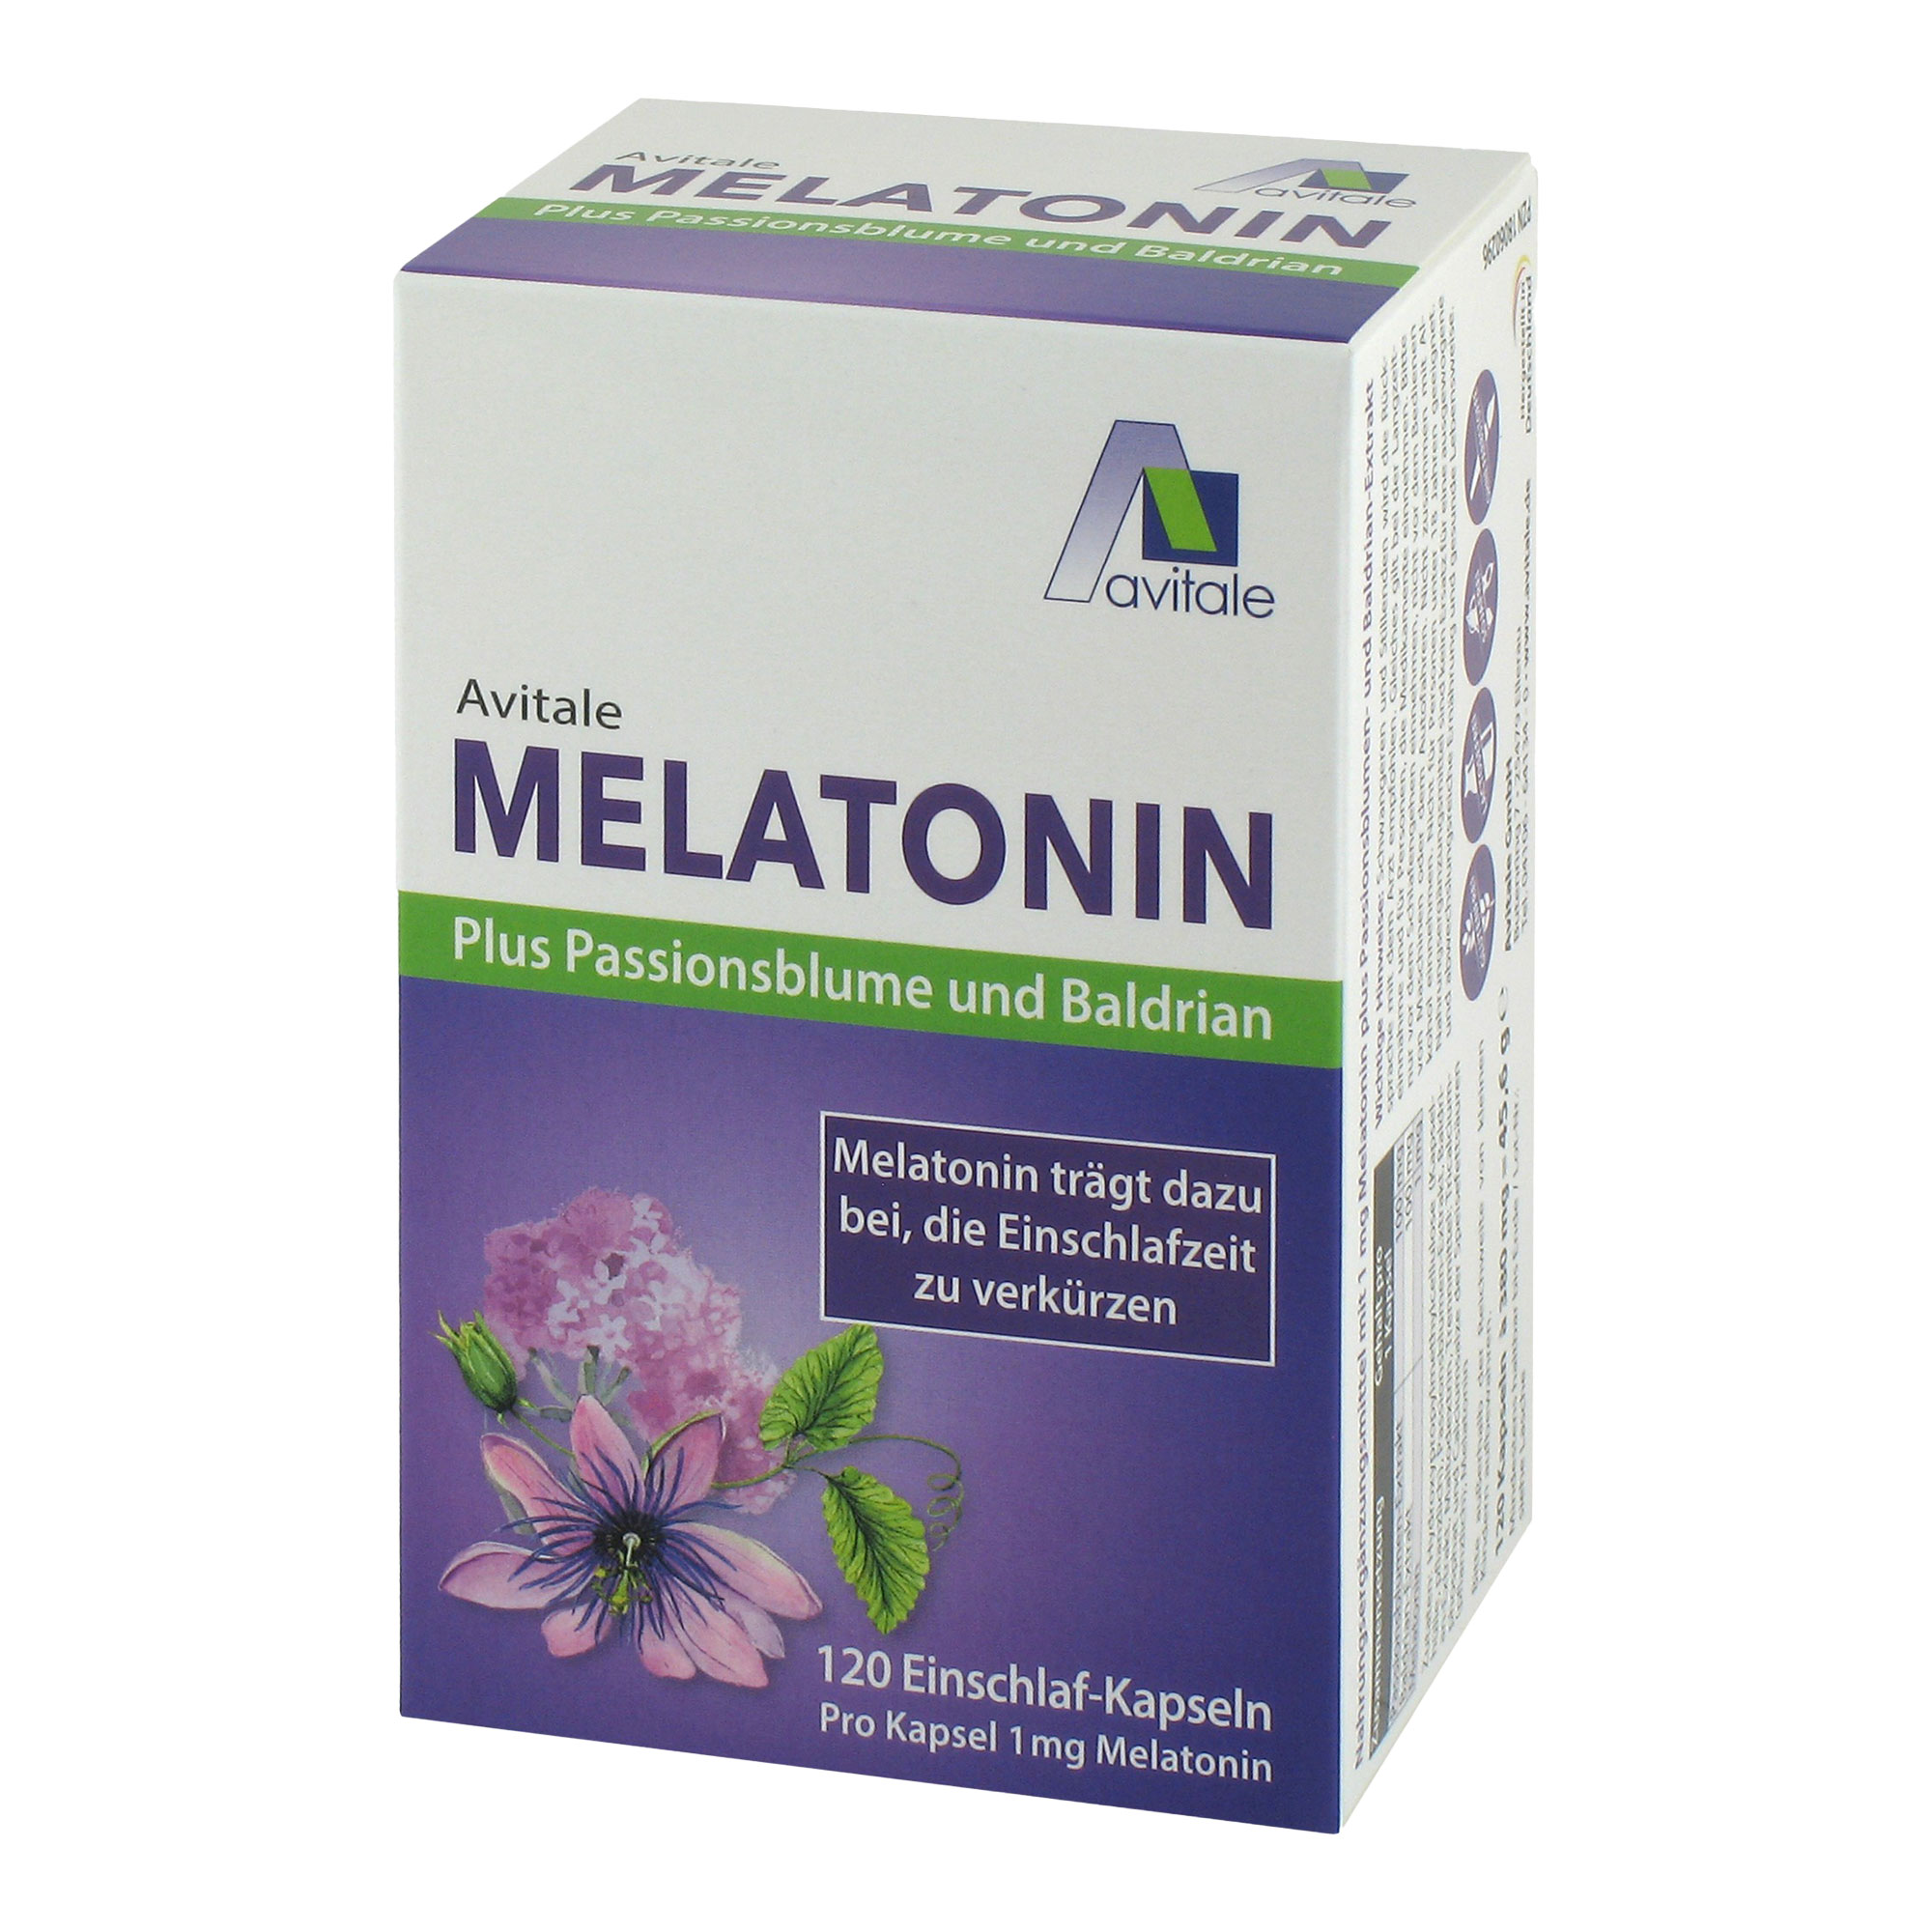 Nahrungsergänzungsmittel mit 1 mg Melatonin, Passionsblumen- und Baldrianextrakt.